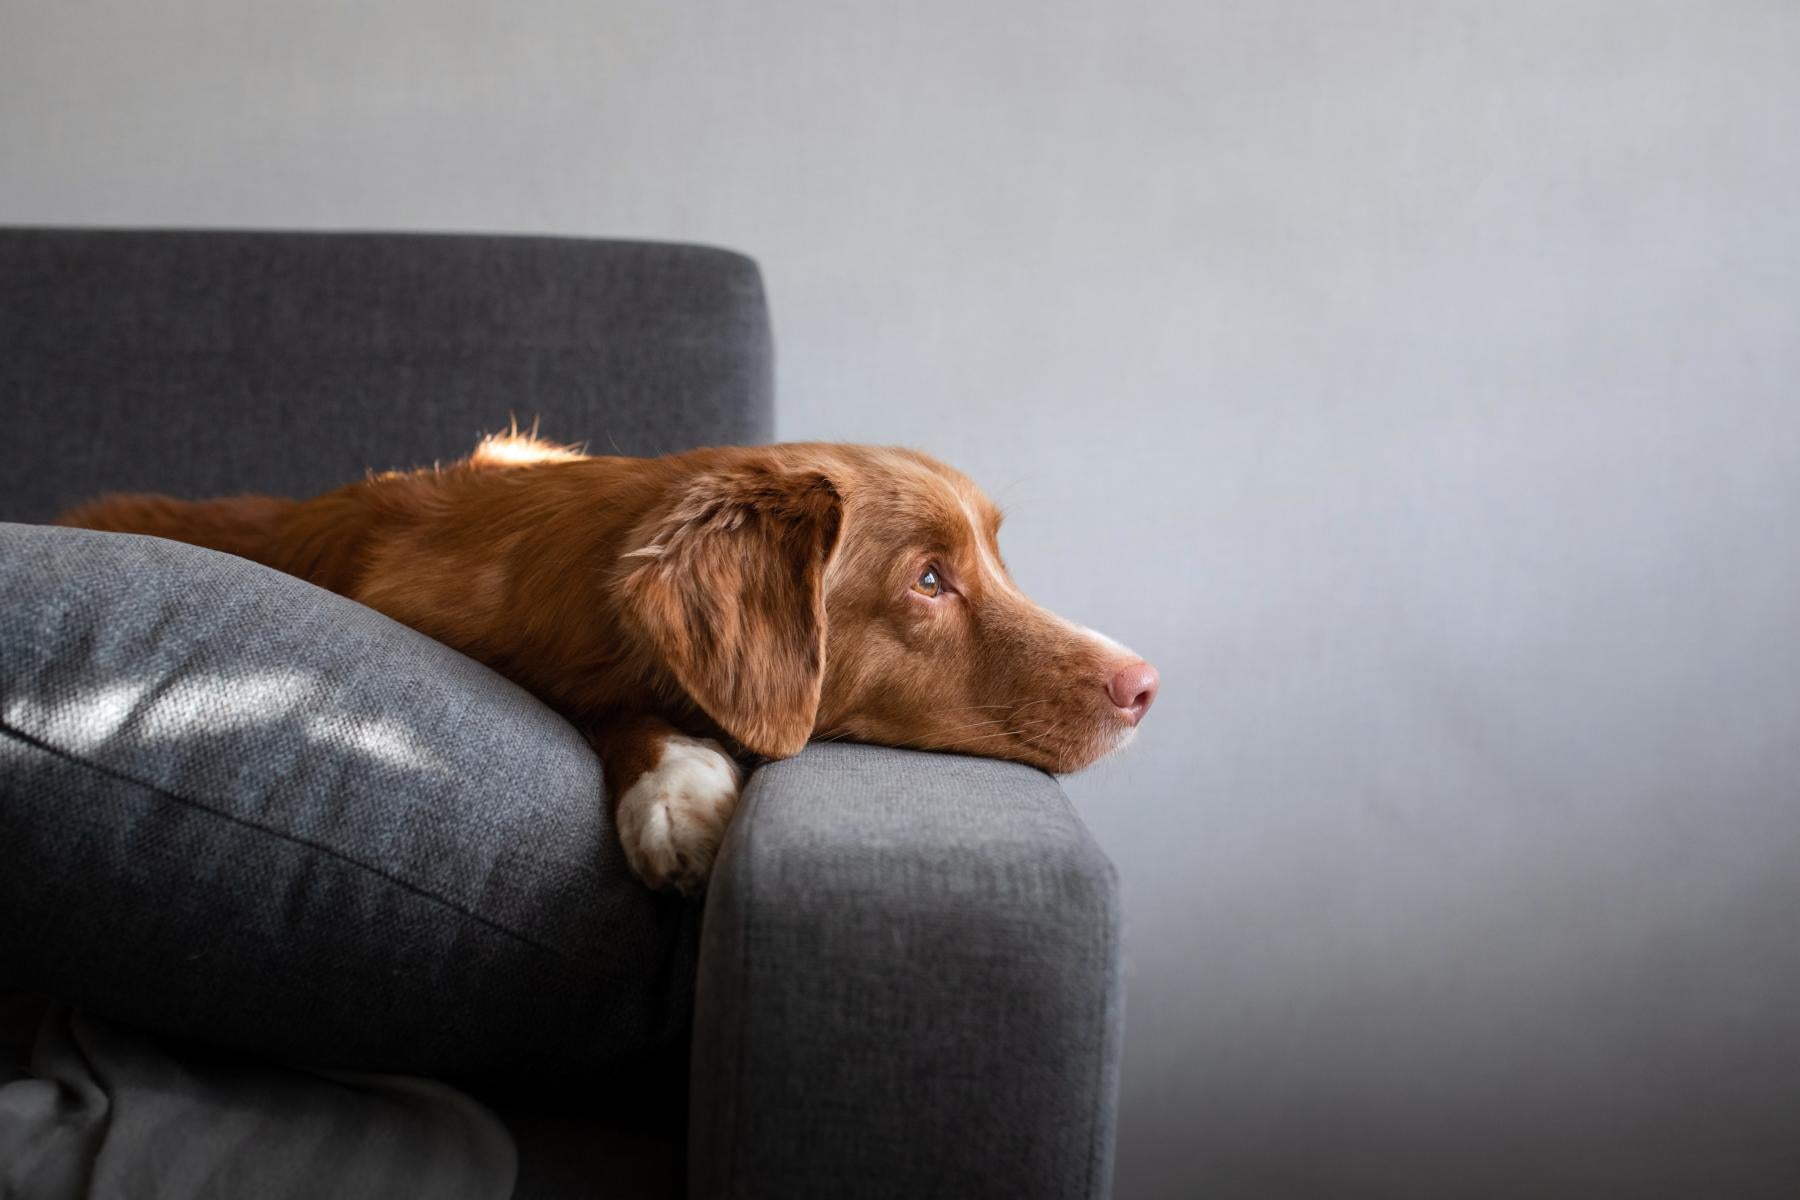 FAVLY Petfood_Hund liegt auf einer Couch